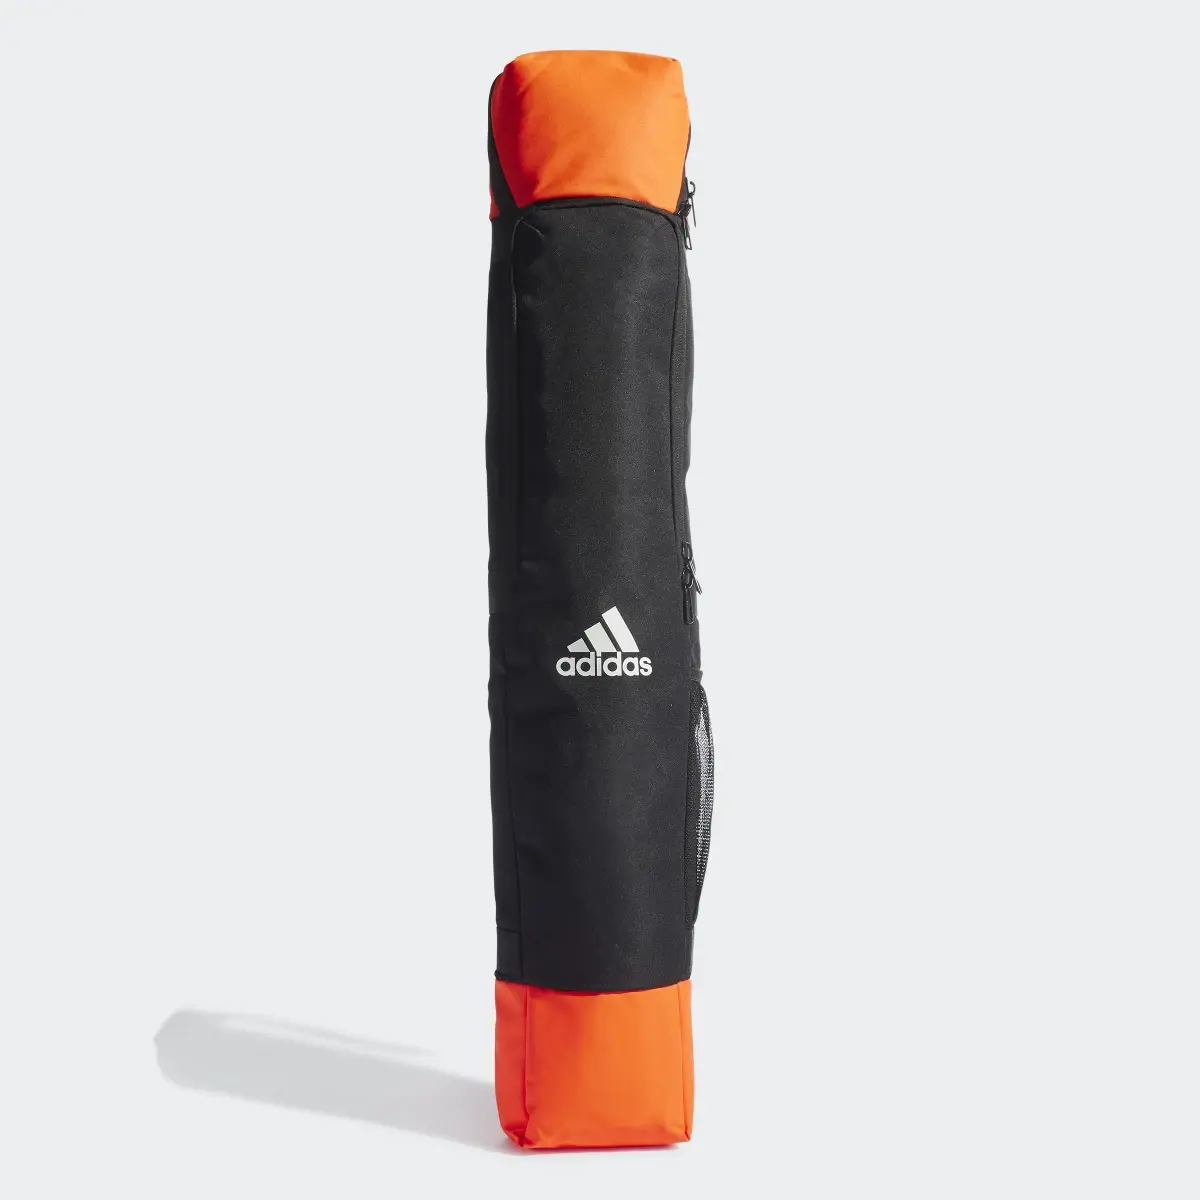 Adidas VS2 Stick Bag. 1